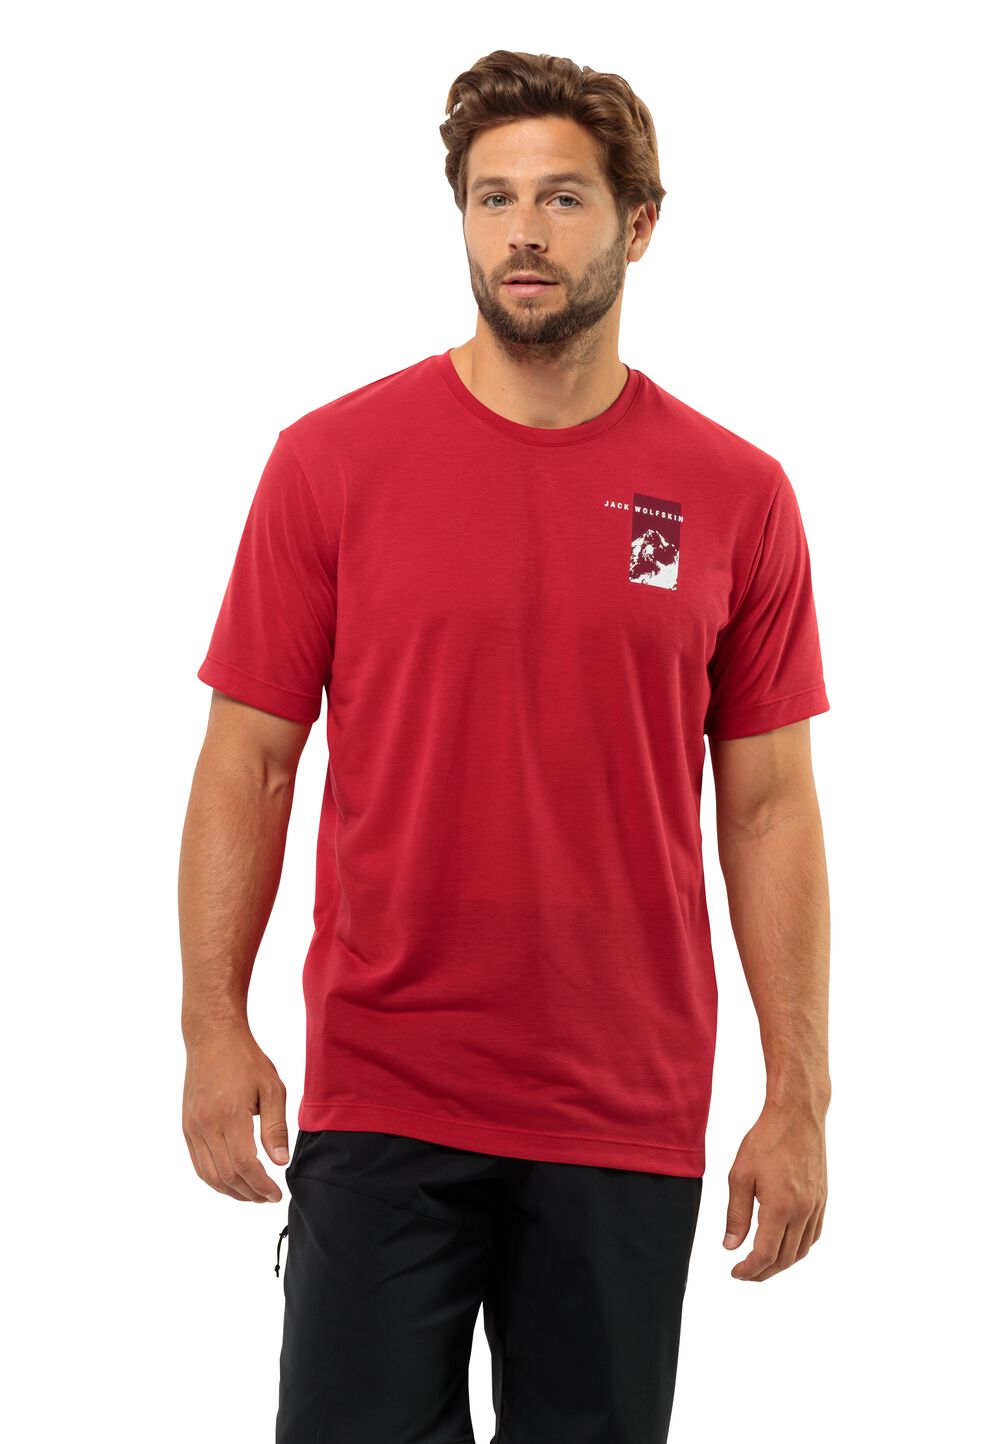 Jack Wolfskin Vonnan S S Graphic T-Shirt Men Functioneel shirt Heren M rood red glow